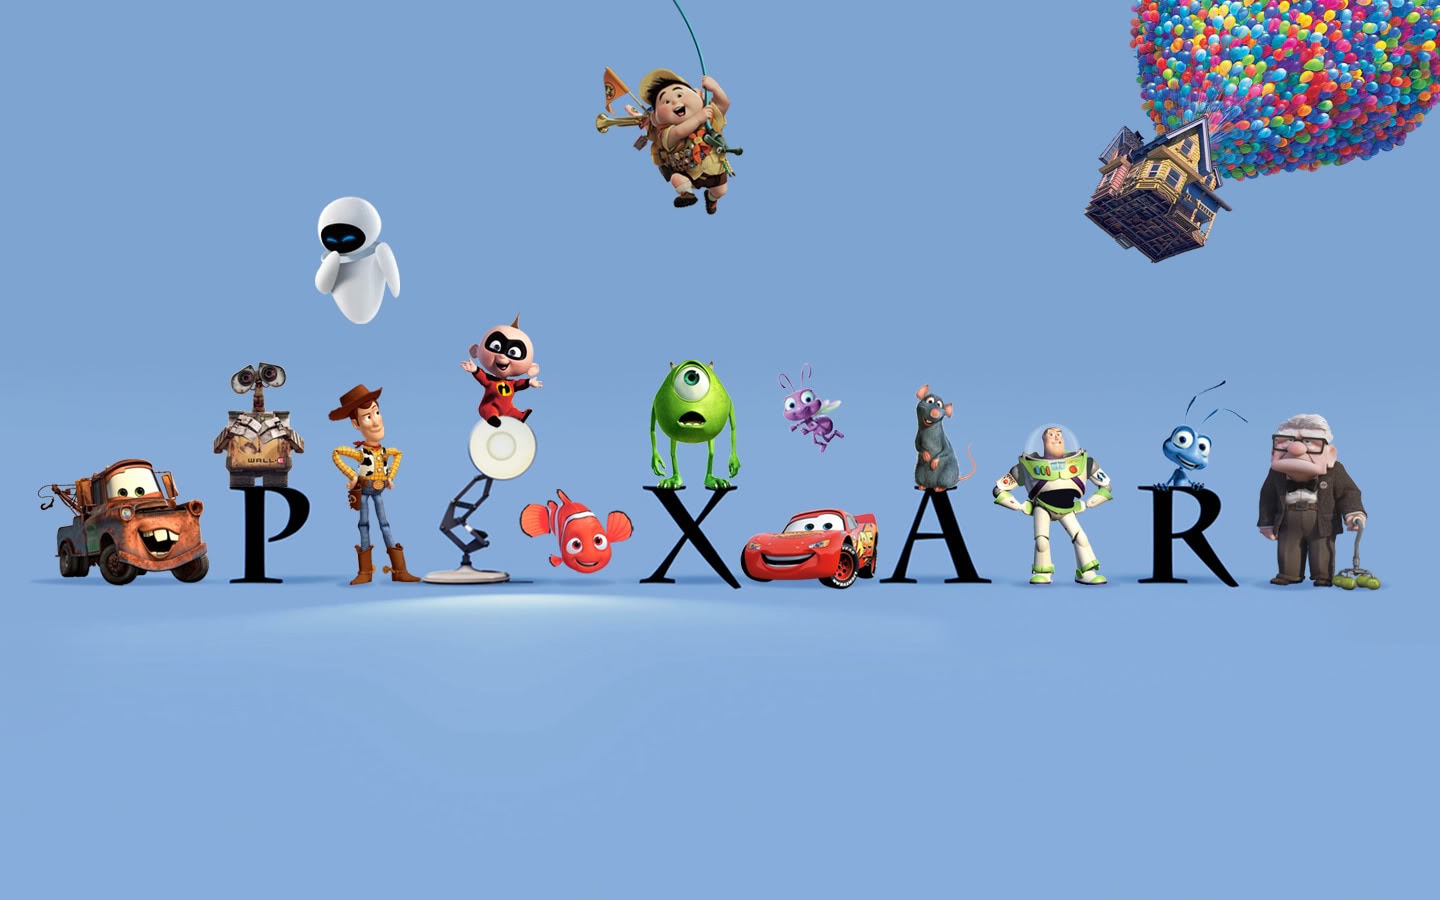 Met 'Incredibles 2' brengt animatiestudio Pixar zijn 20ste film in de zalen